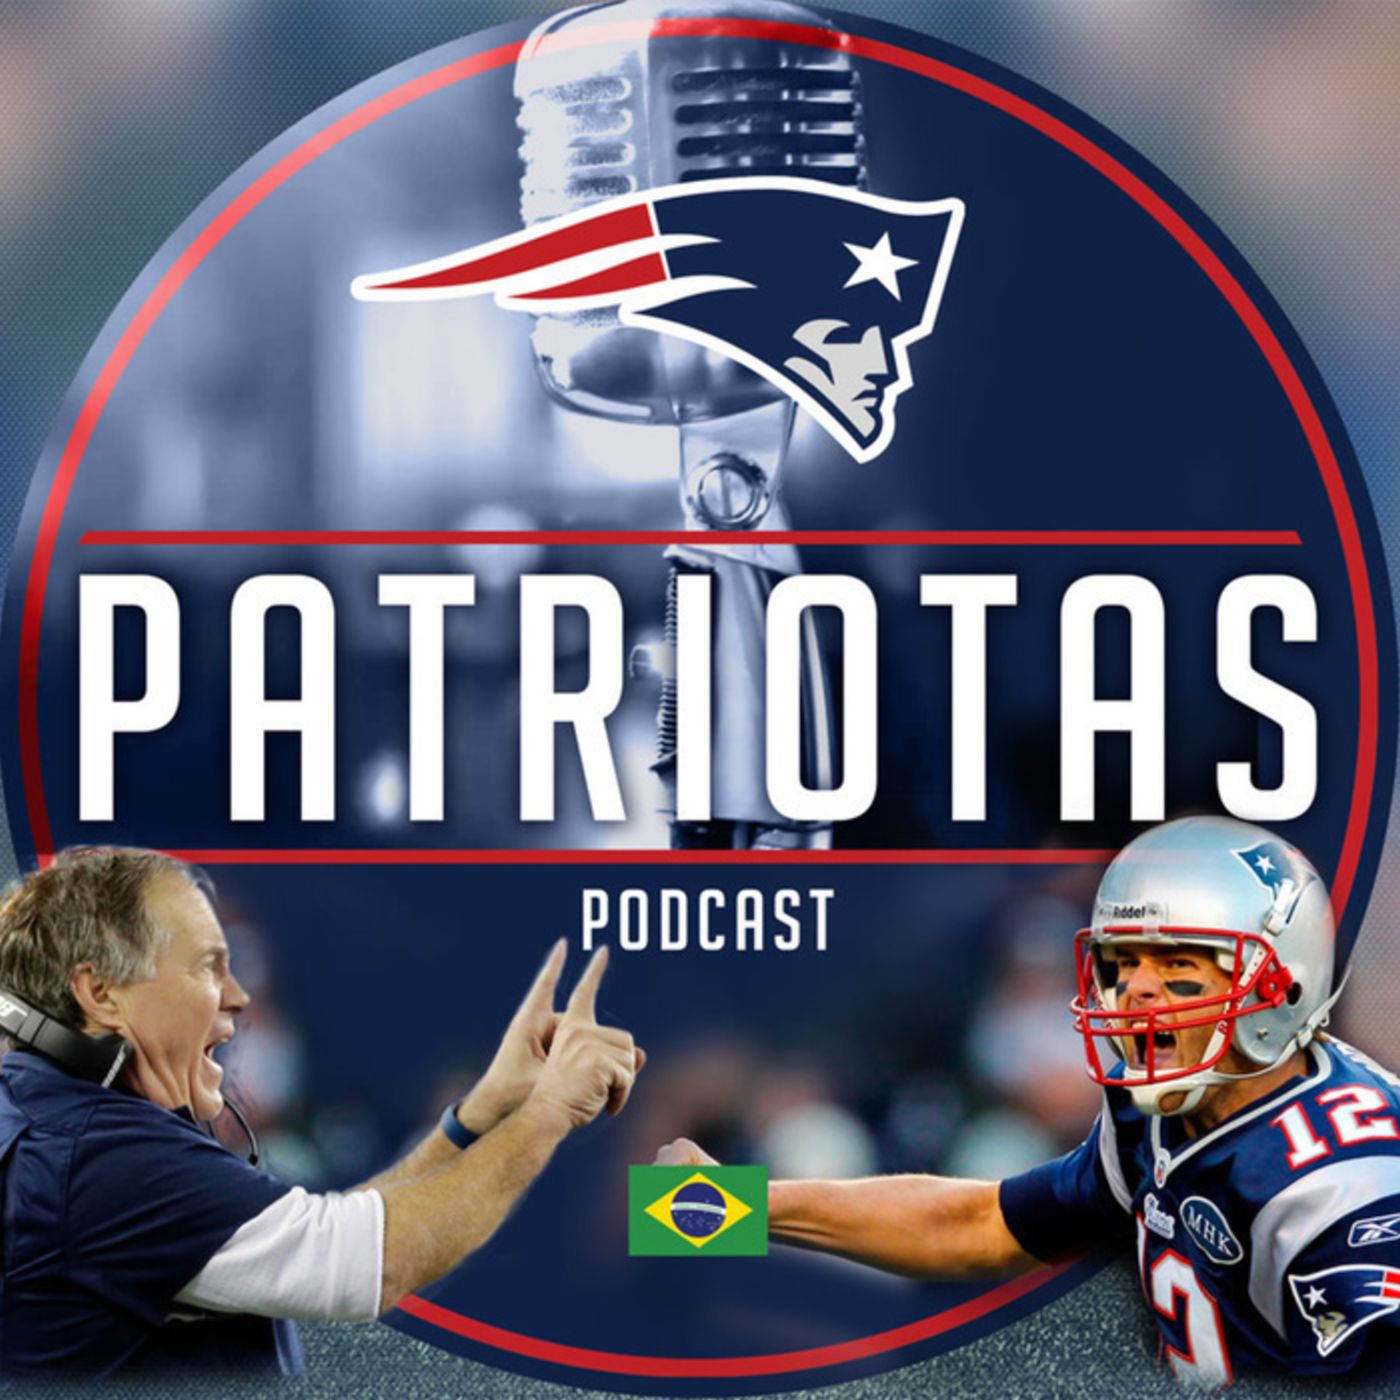 Podcast Patriotas 133 - Perguntas da galera